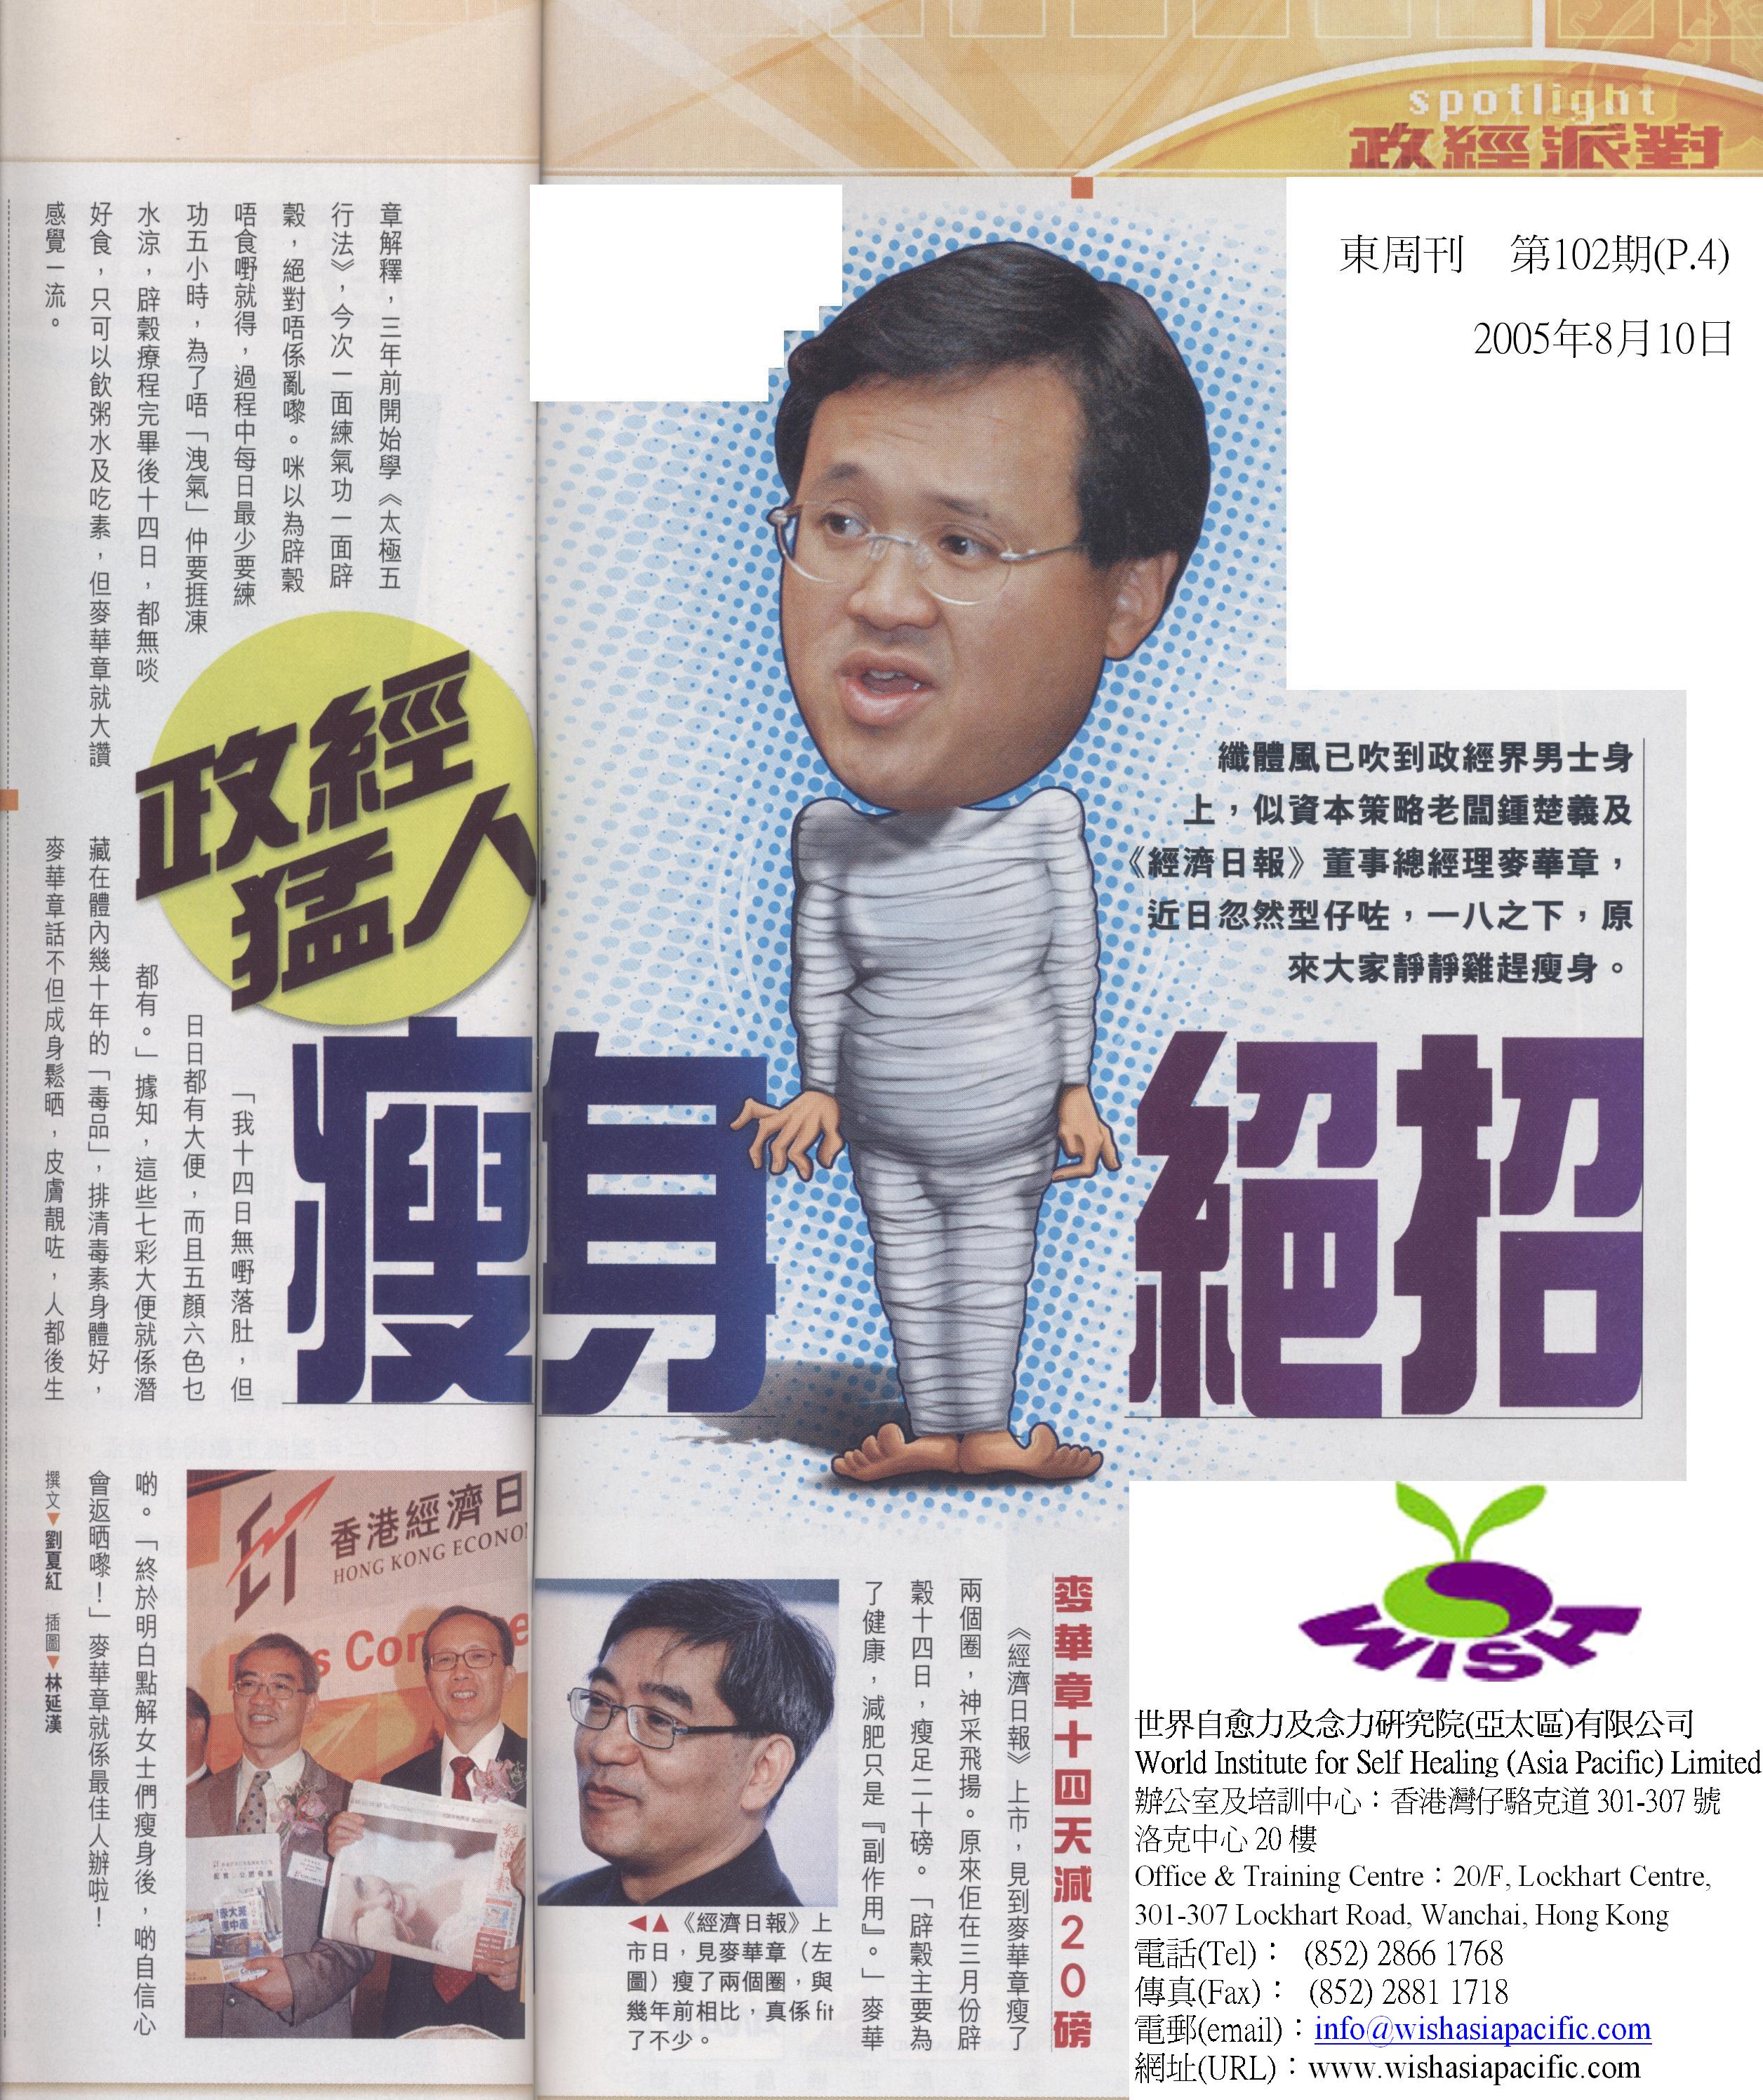 香港東週刊 : 2005年8月10日 (政經猛人 瘦身絕招)